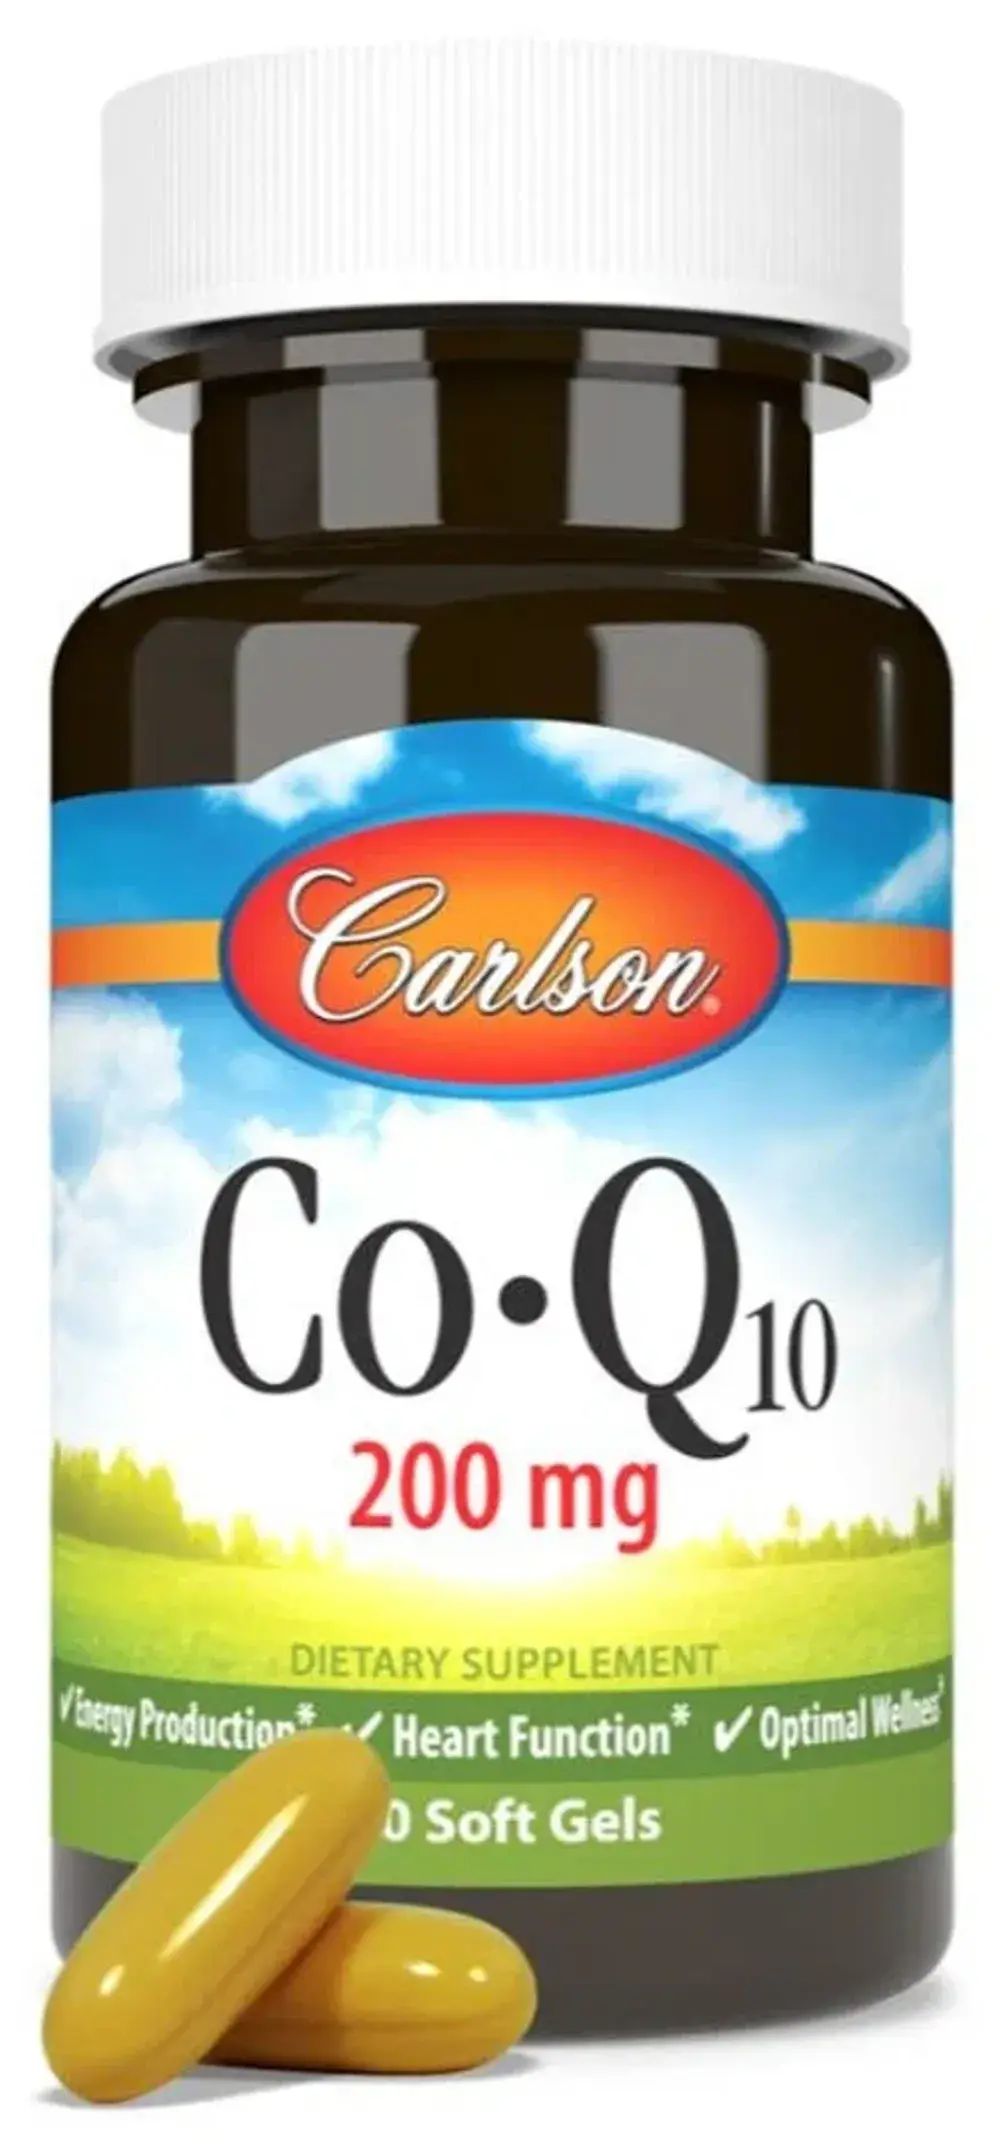 Купить Carlson Co-Q-10 200mg 30 Soft Gels